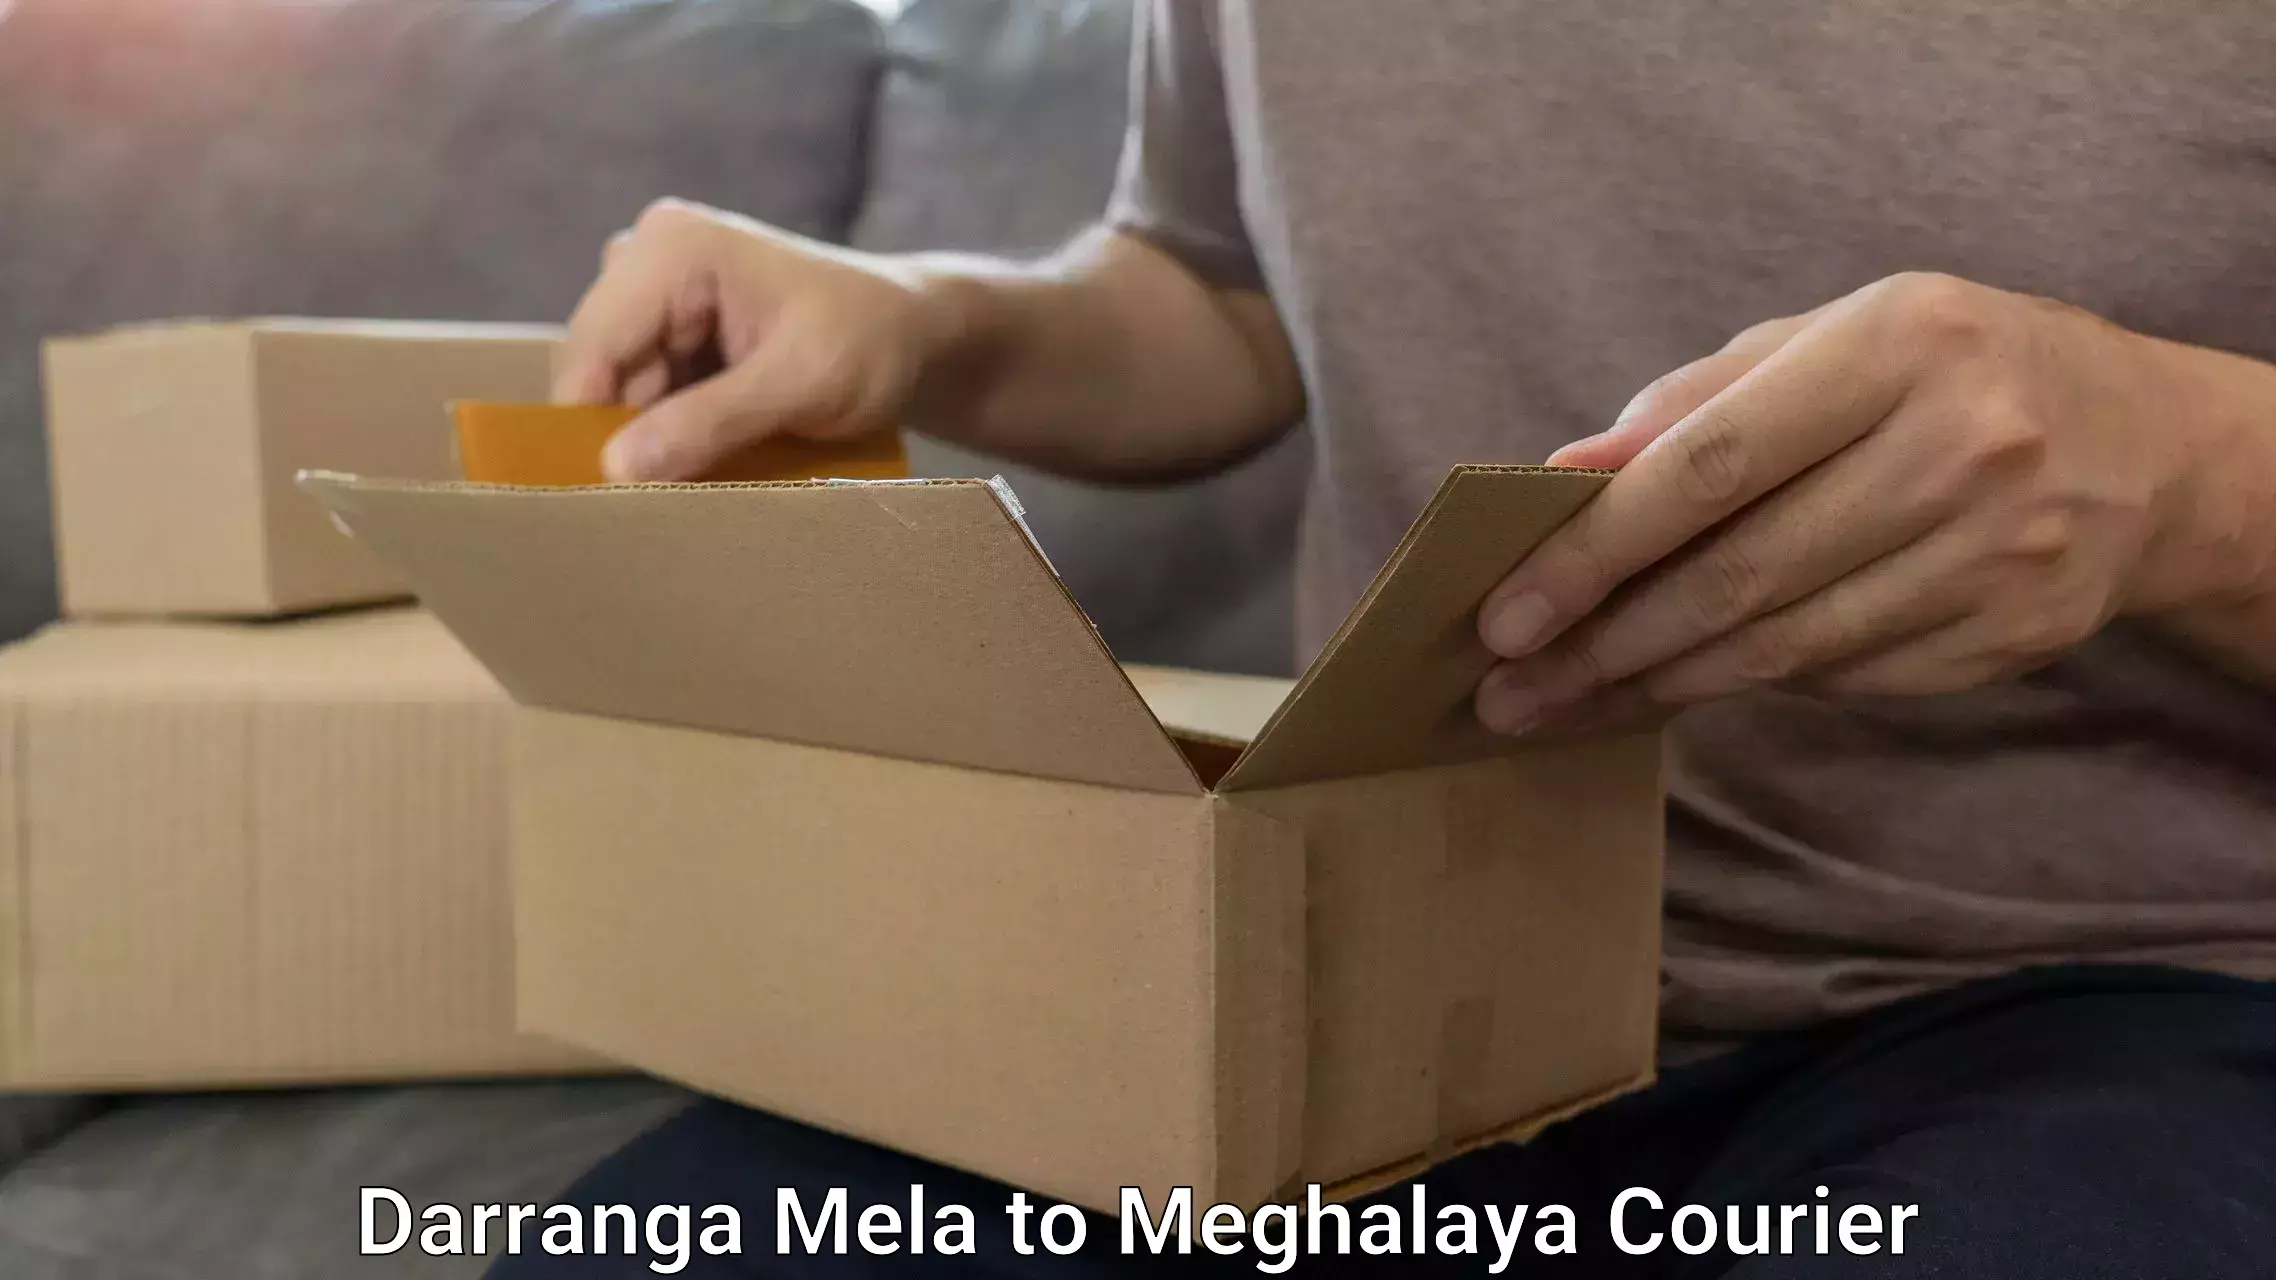 Luggage transport consulting Darranga Mela to Meghalaya